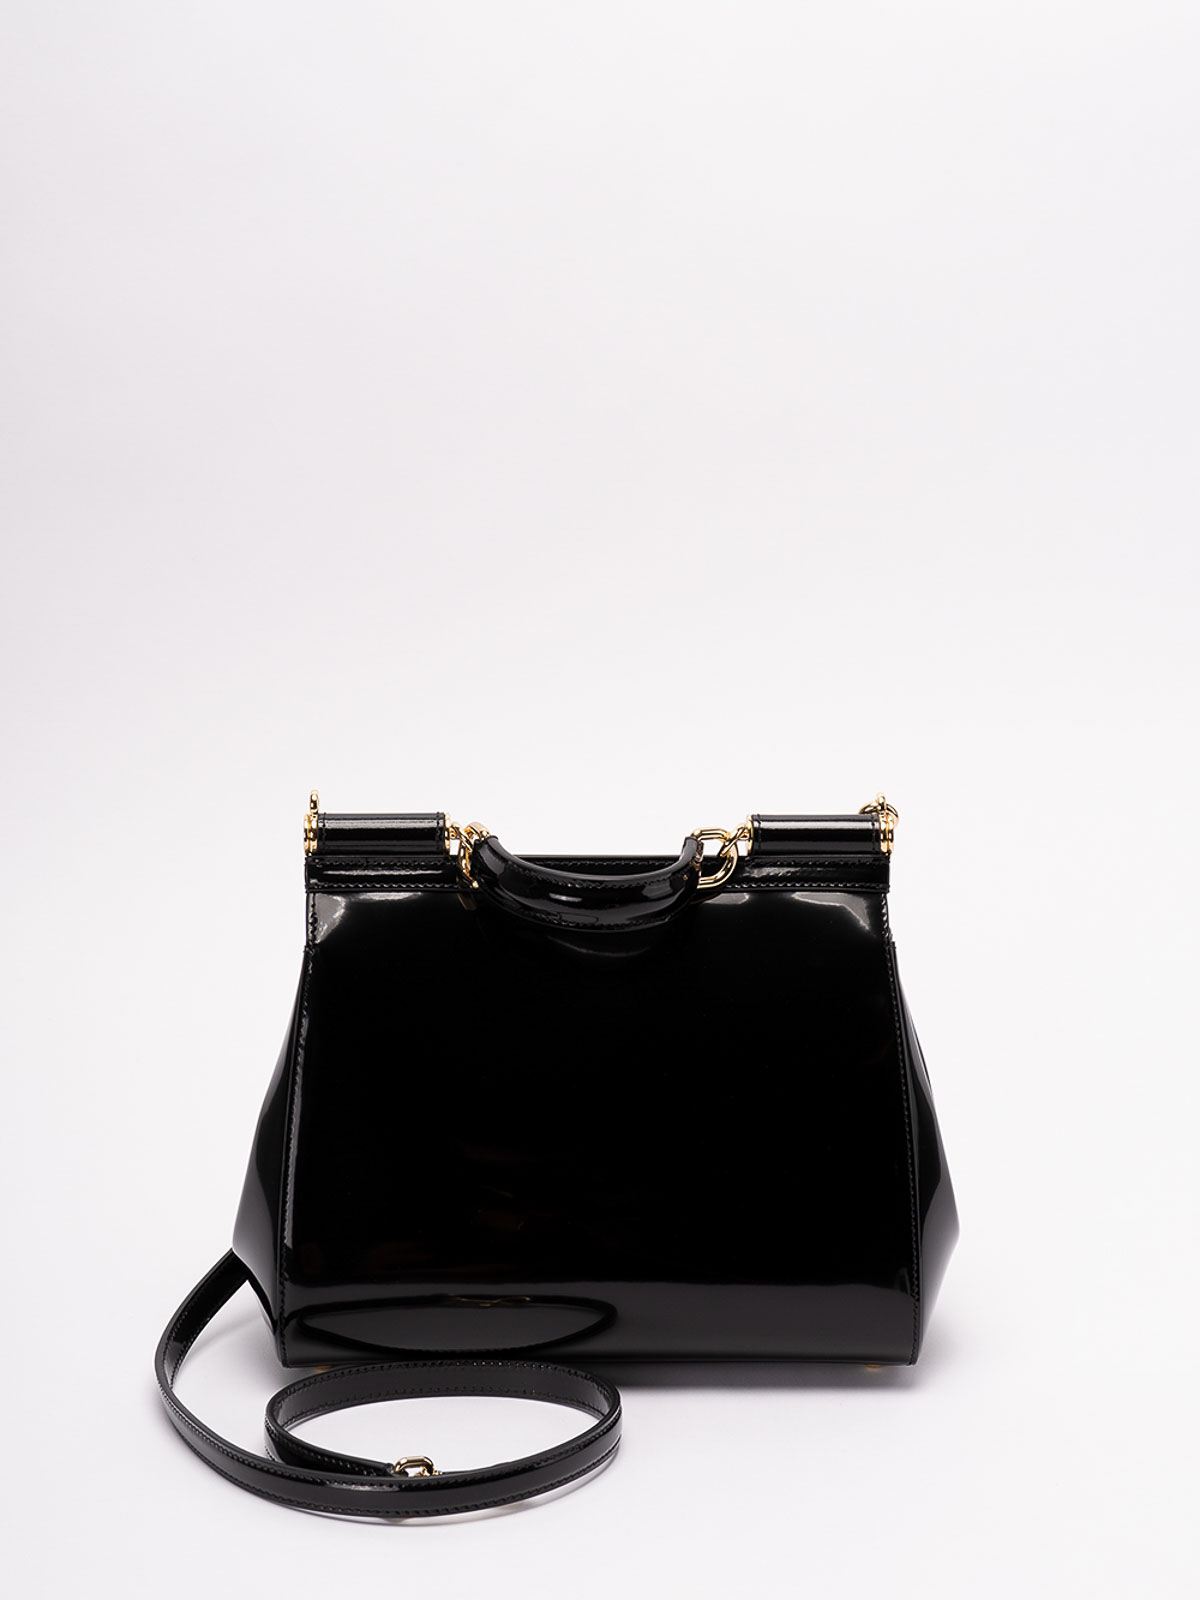 medium Sicily polished shoulder bag, Dolce & Gabbana